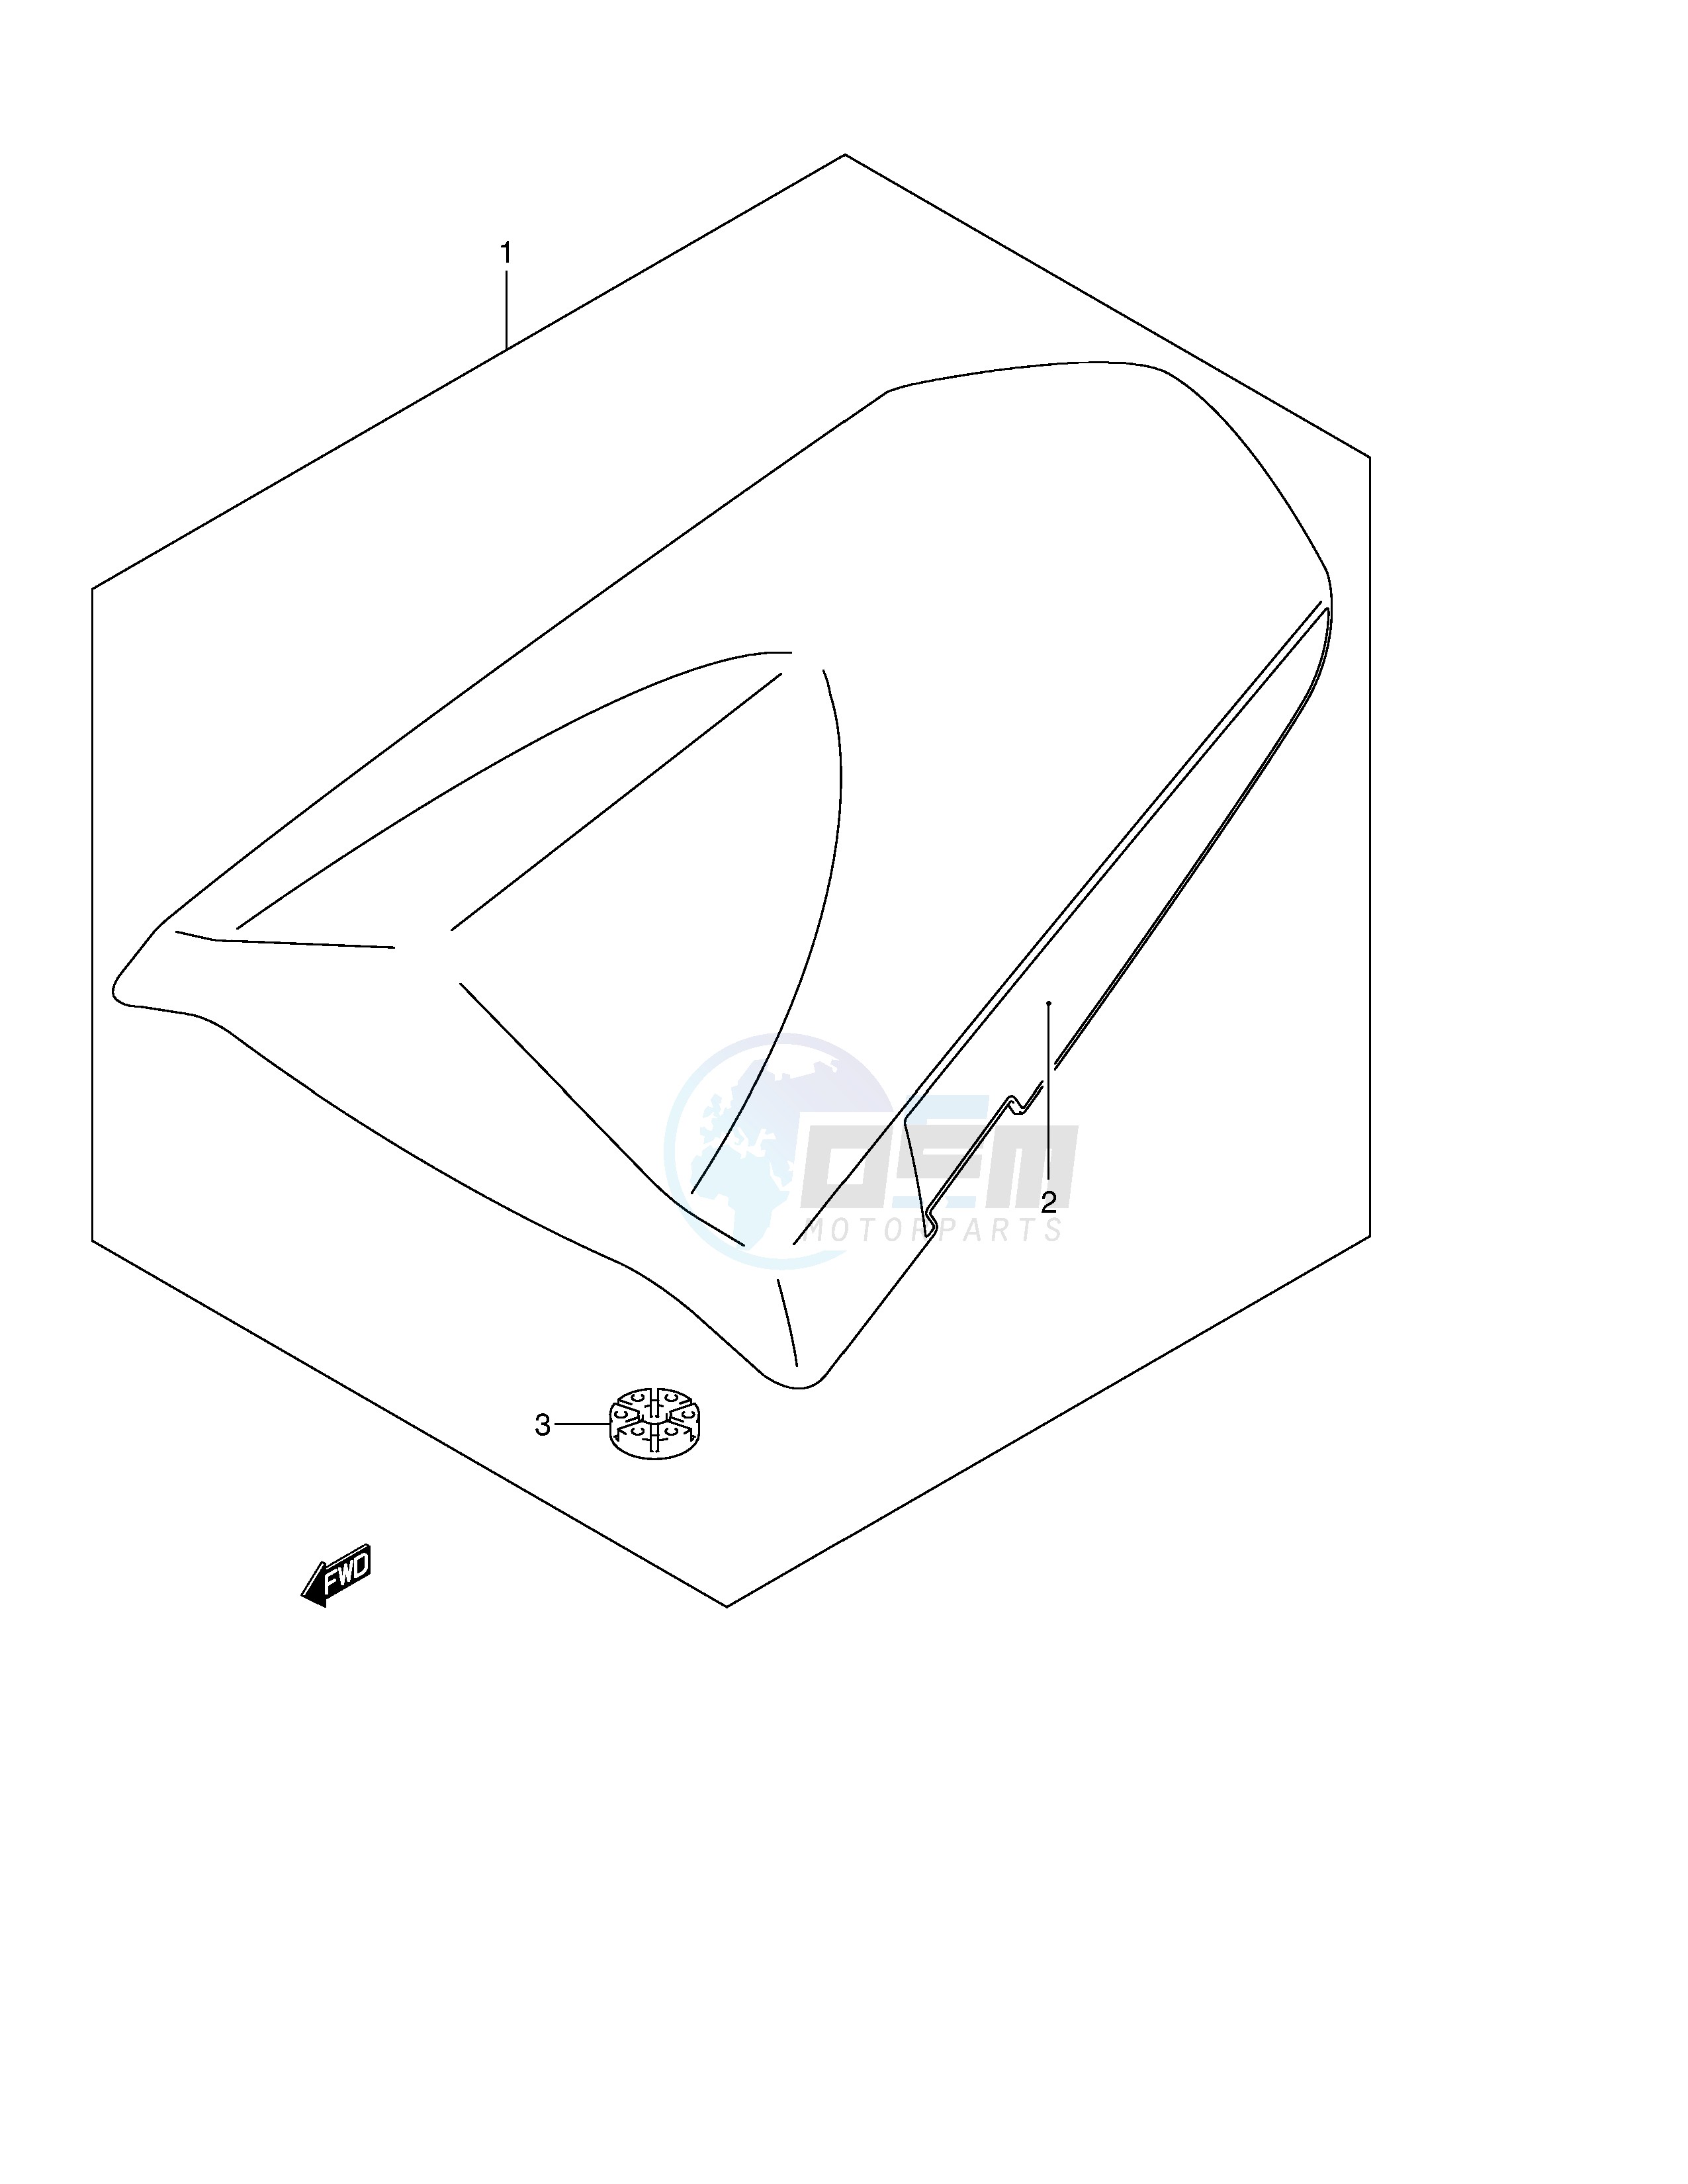 SEAT TAIL BOX (MODEL K3) image